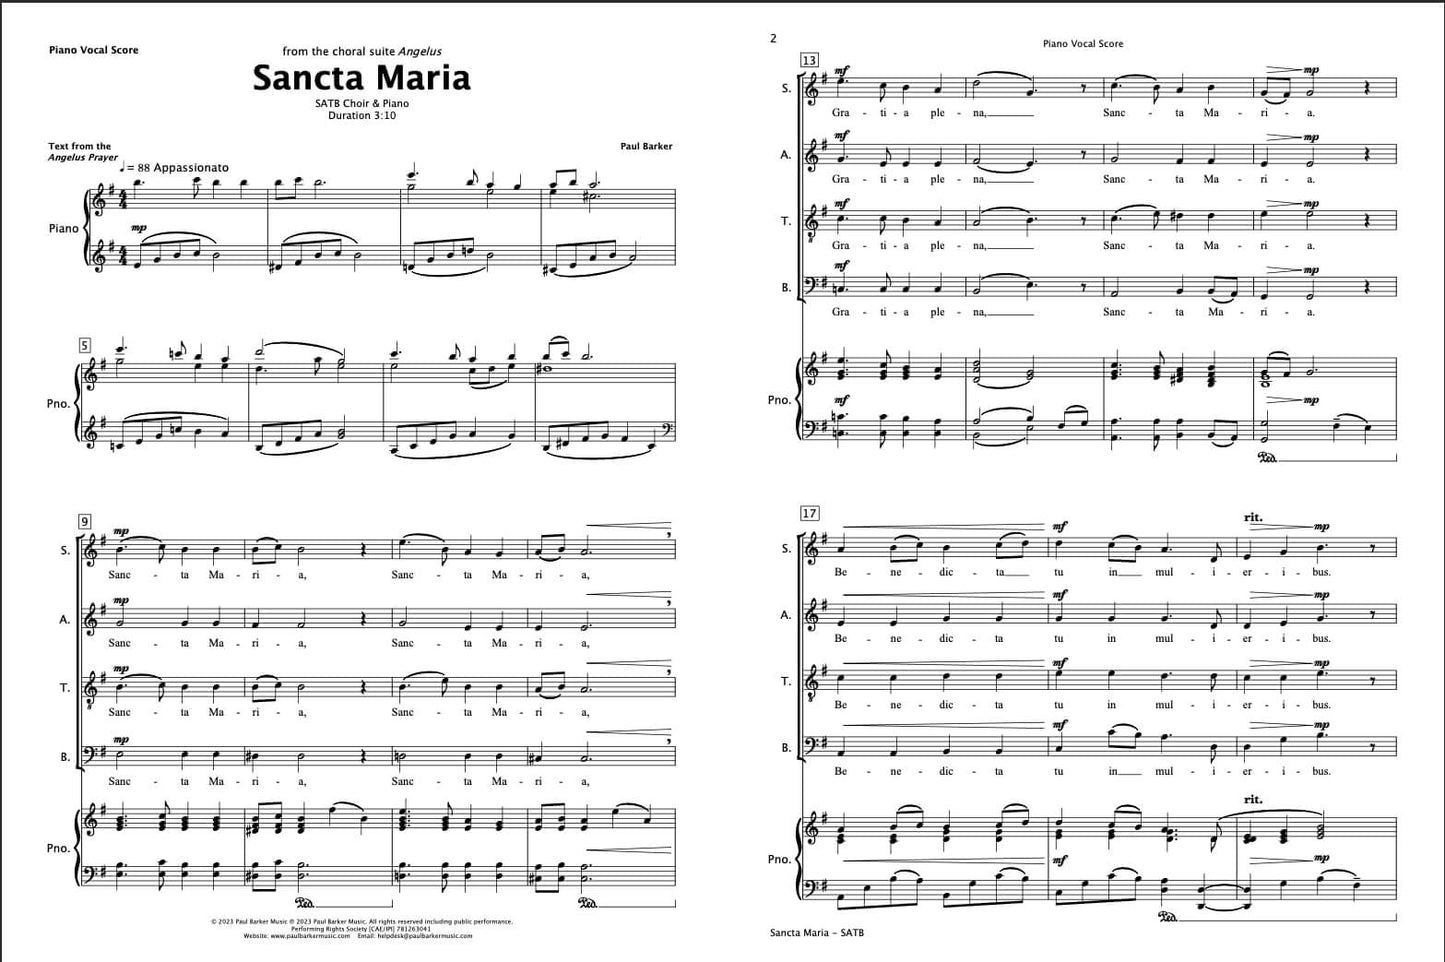 Sancta Maria (SATB Choir & Piano)